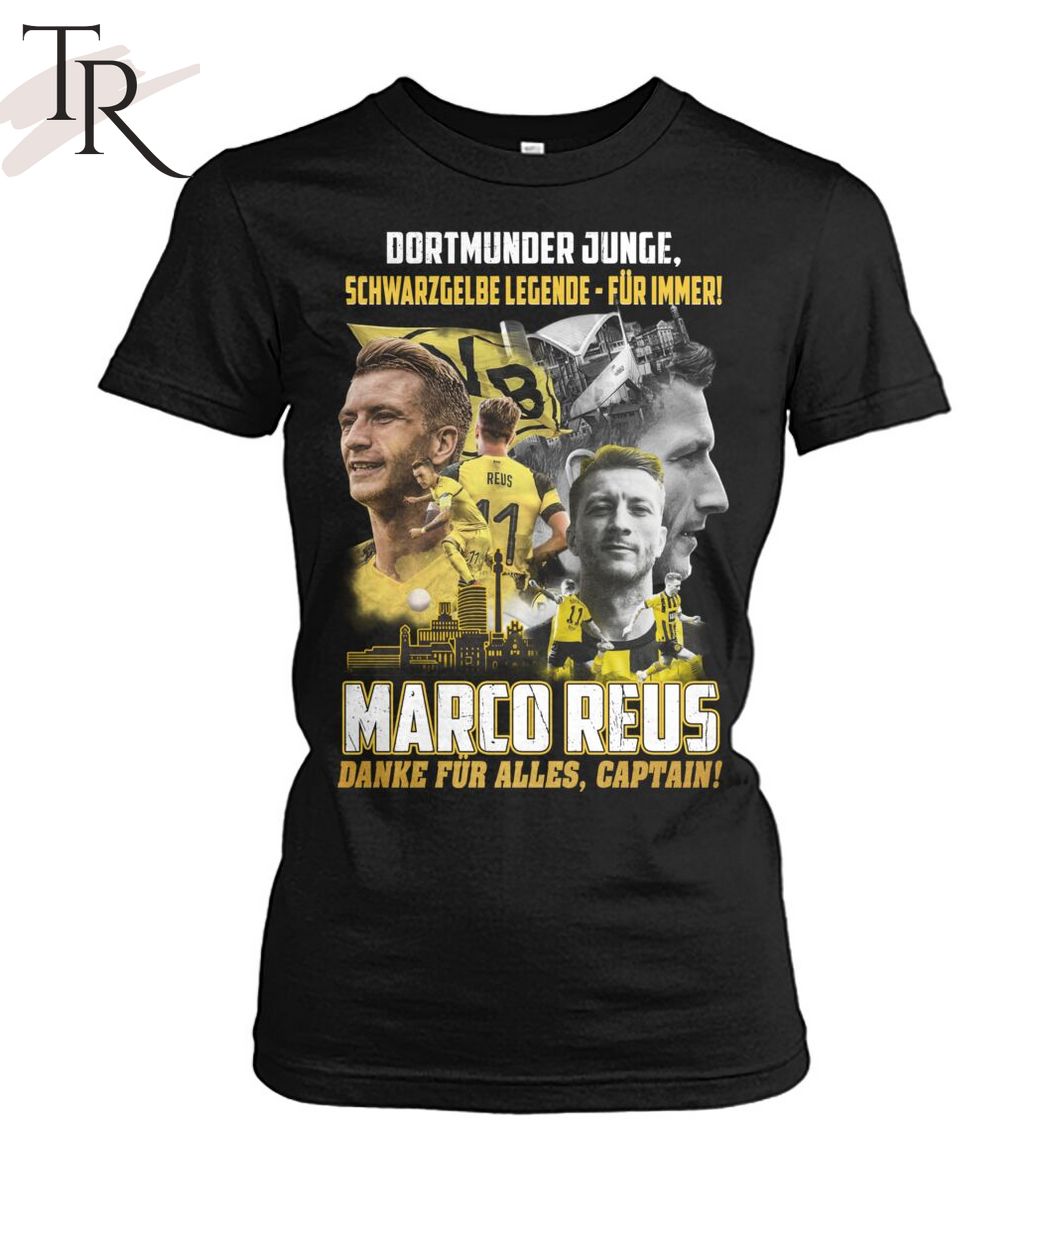 Dortmunder Junge Schwarz Gelbe Legende - Fur Immer Marco Reus Danke Fur Alles, Captain T-Shirt